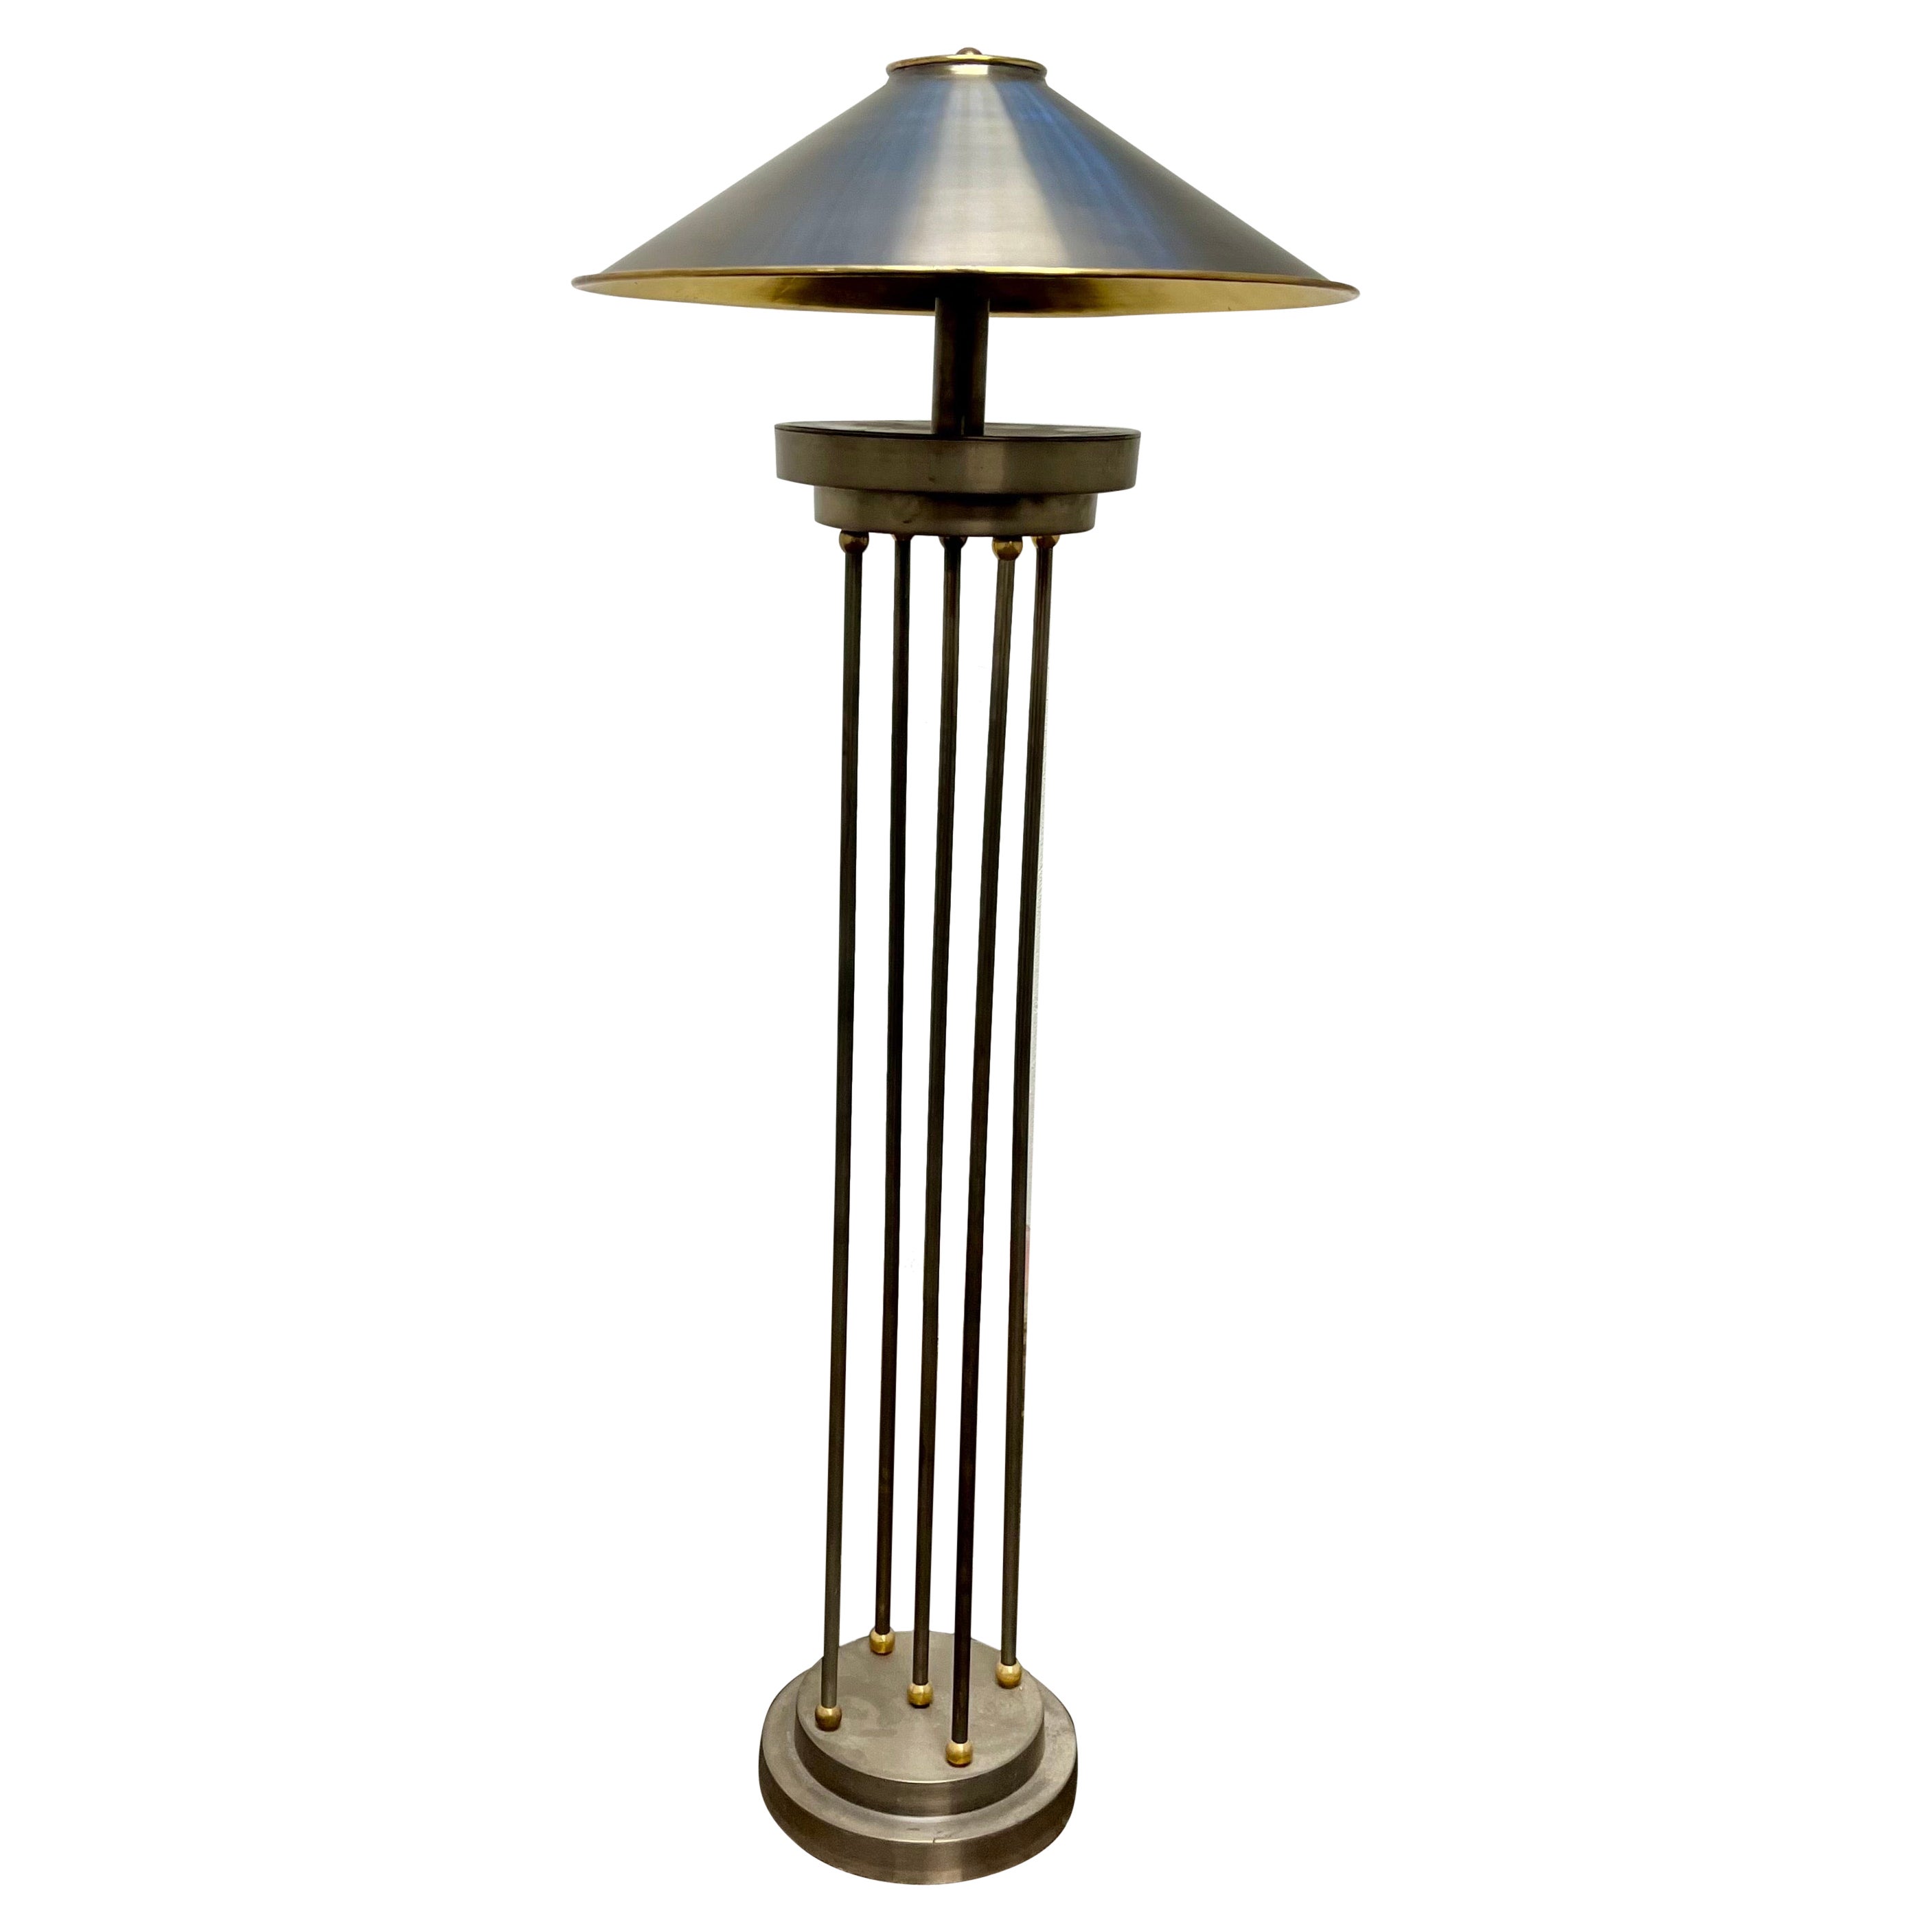 Lampadaires colonnaires postmodernes vintage avec abat-jour en métal